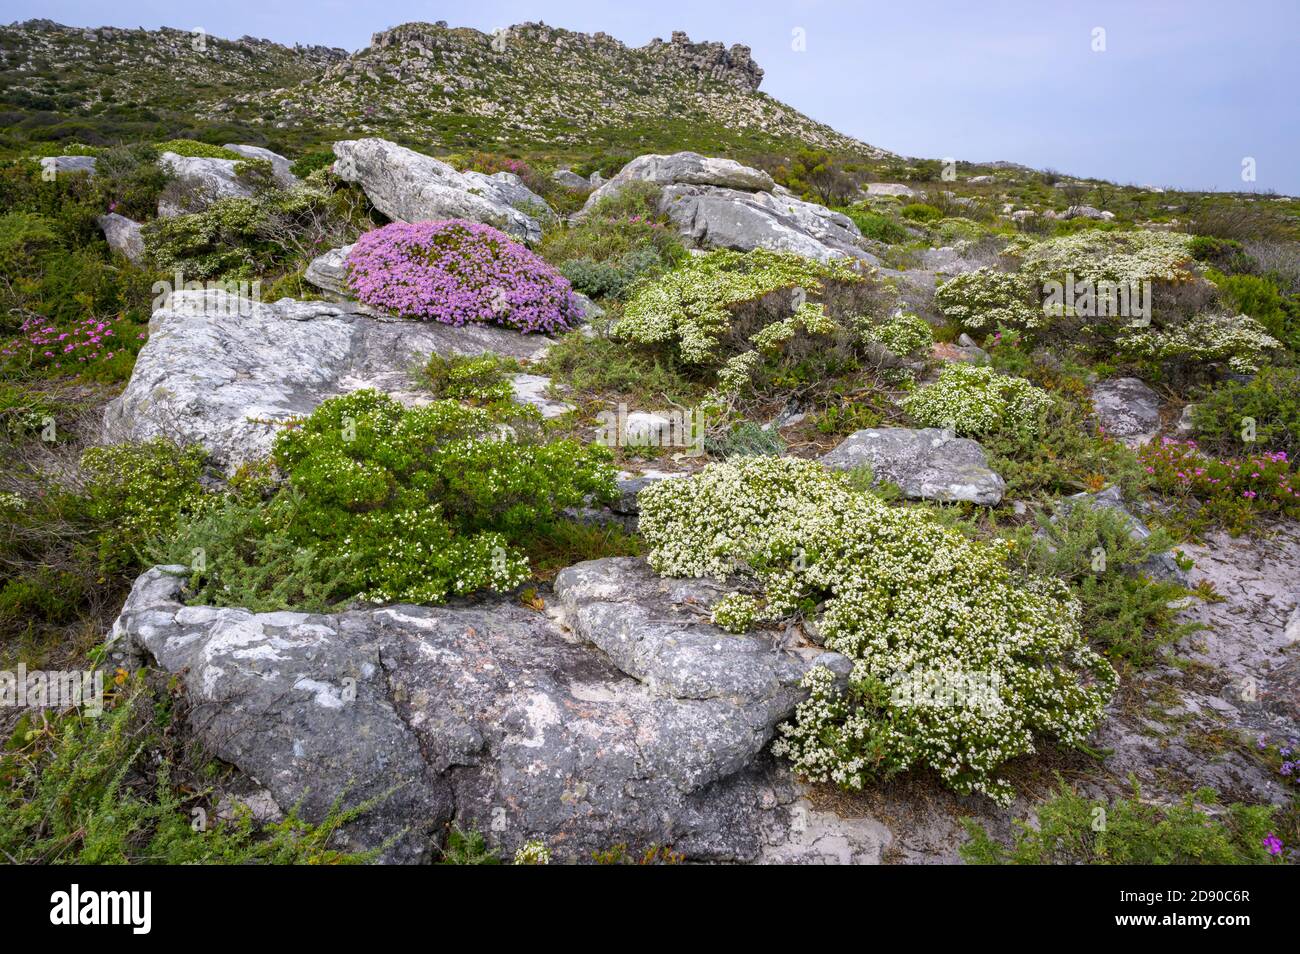 Fiori e vegetazione in paesaggio vicino a capo di buona speranza, Table montagna parco nazionale, Sudafrica. Foto Stock